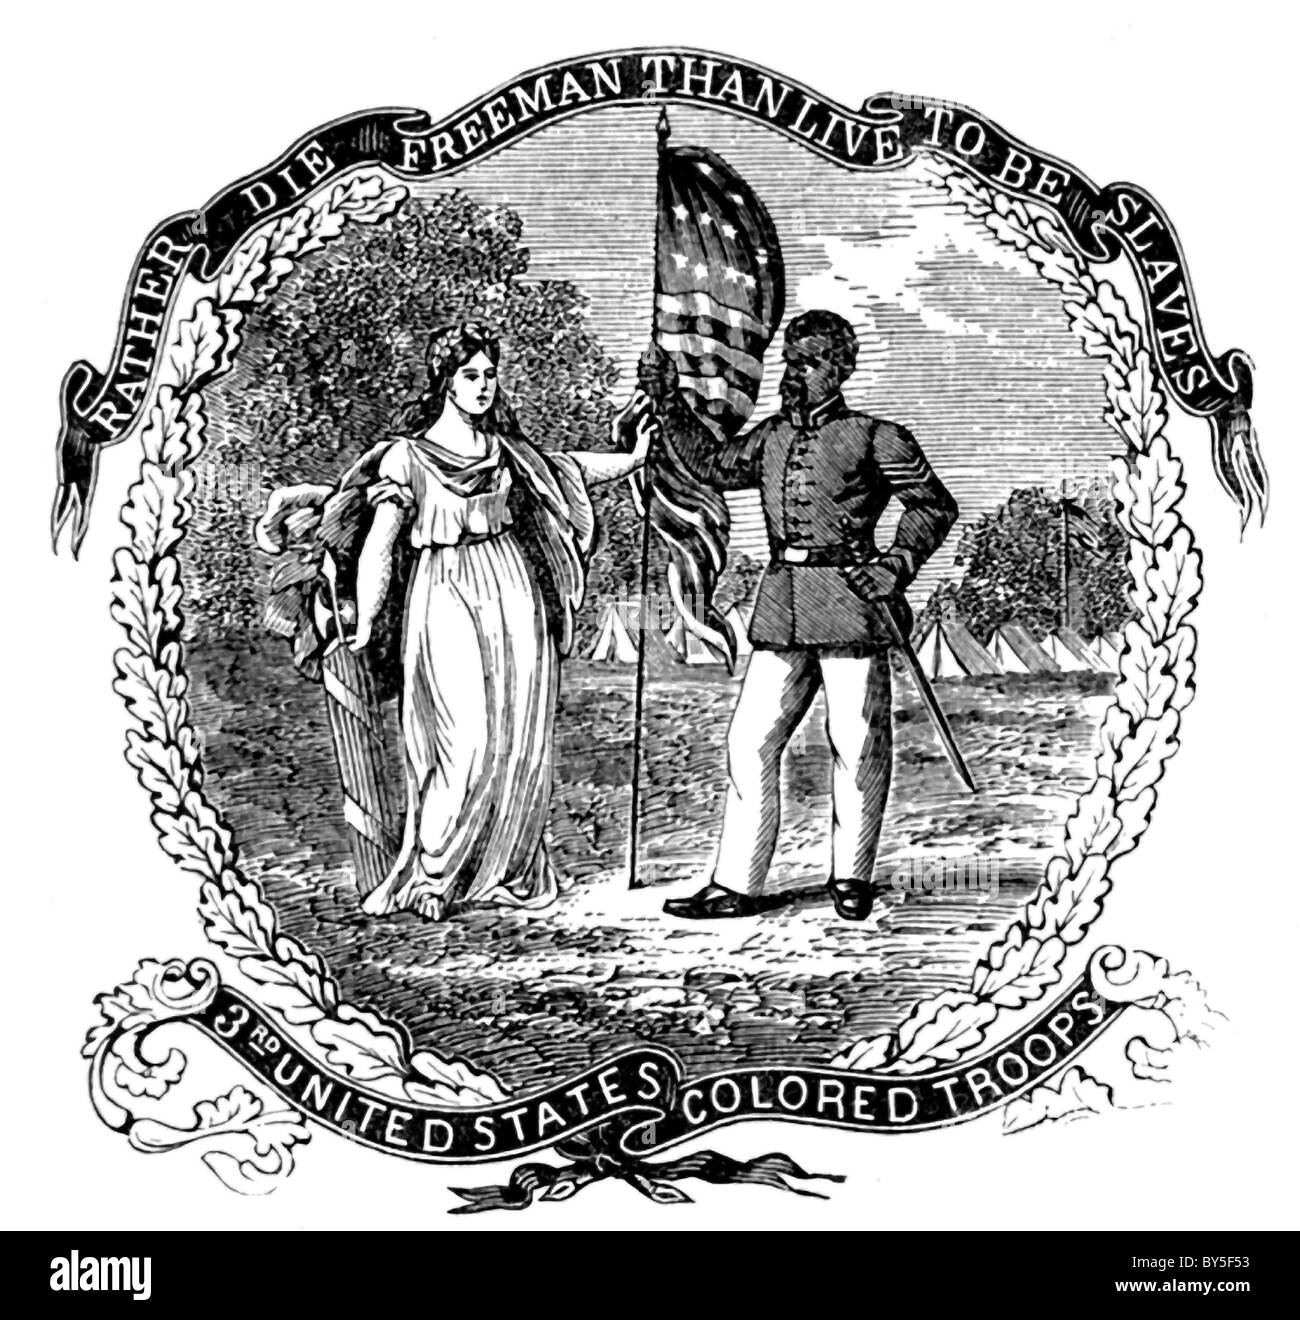 Cette gravure illustre la bannière de la troisième États-unis Troupes de couleur qui se sont battus pour l'Union dans la guerre civile. Banque D'Images